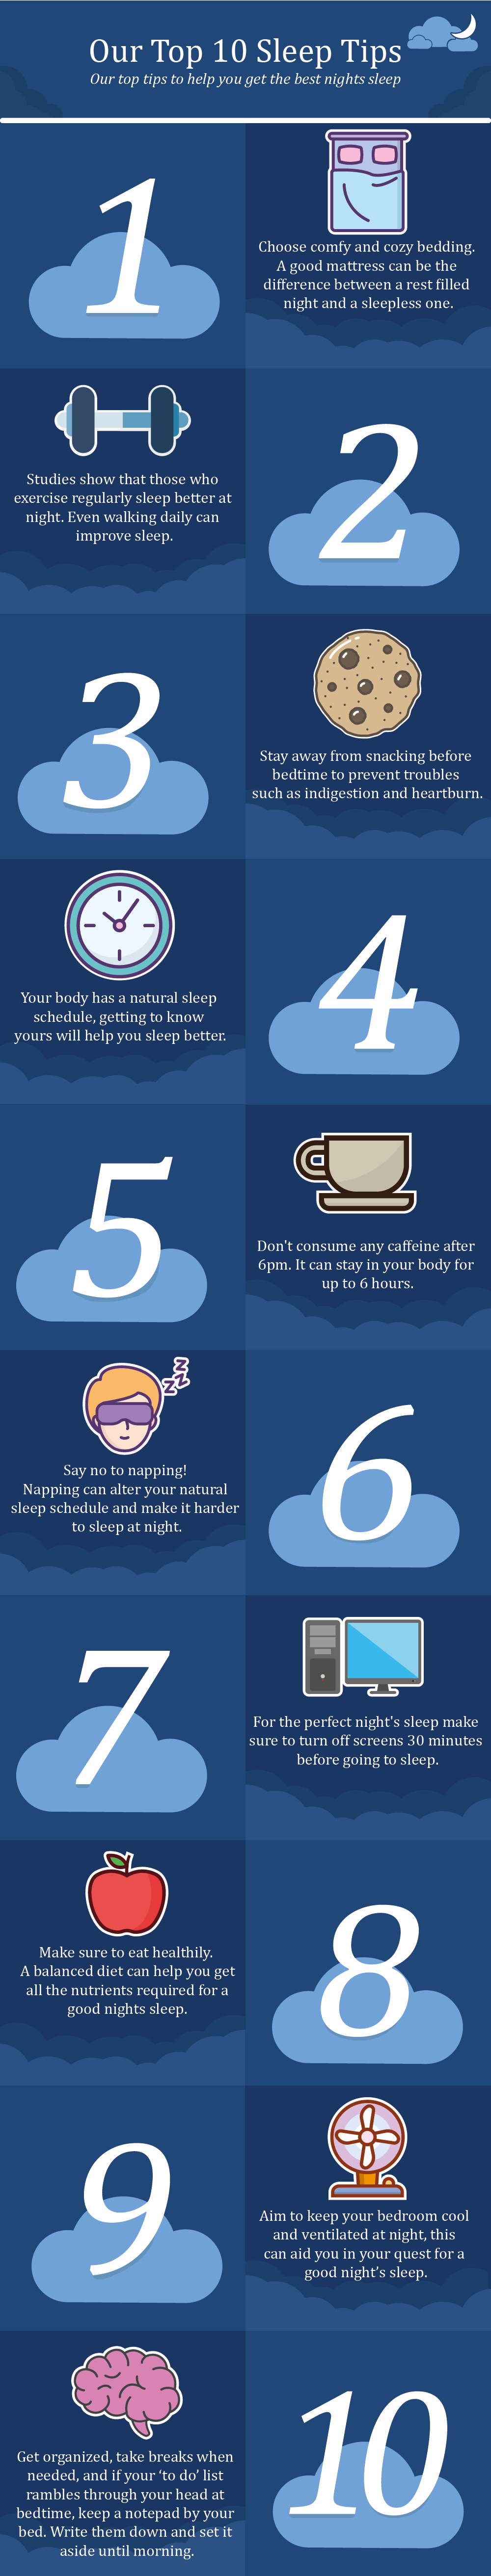 Our top ten sleep tips